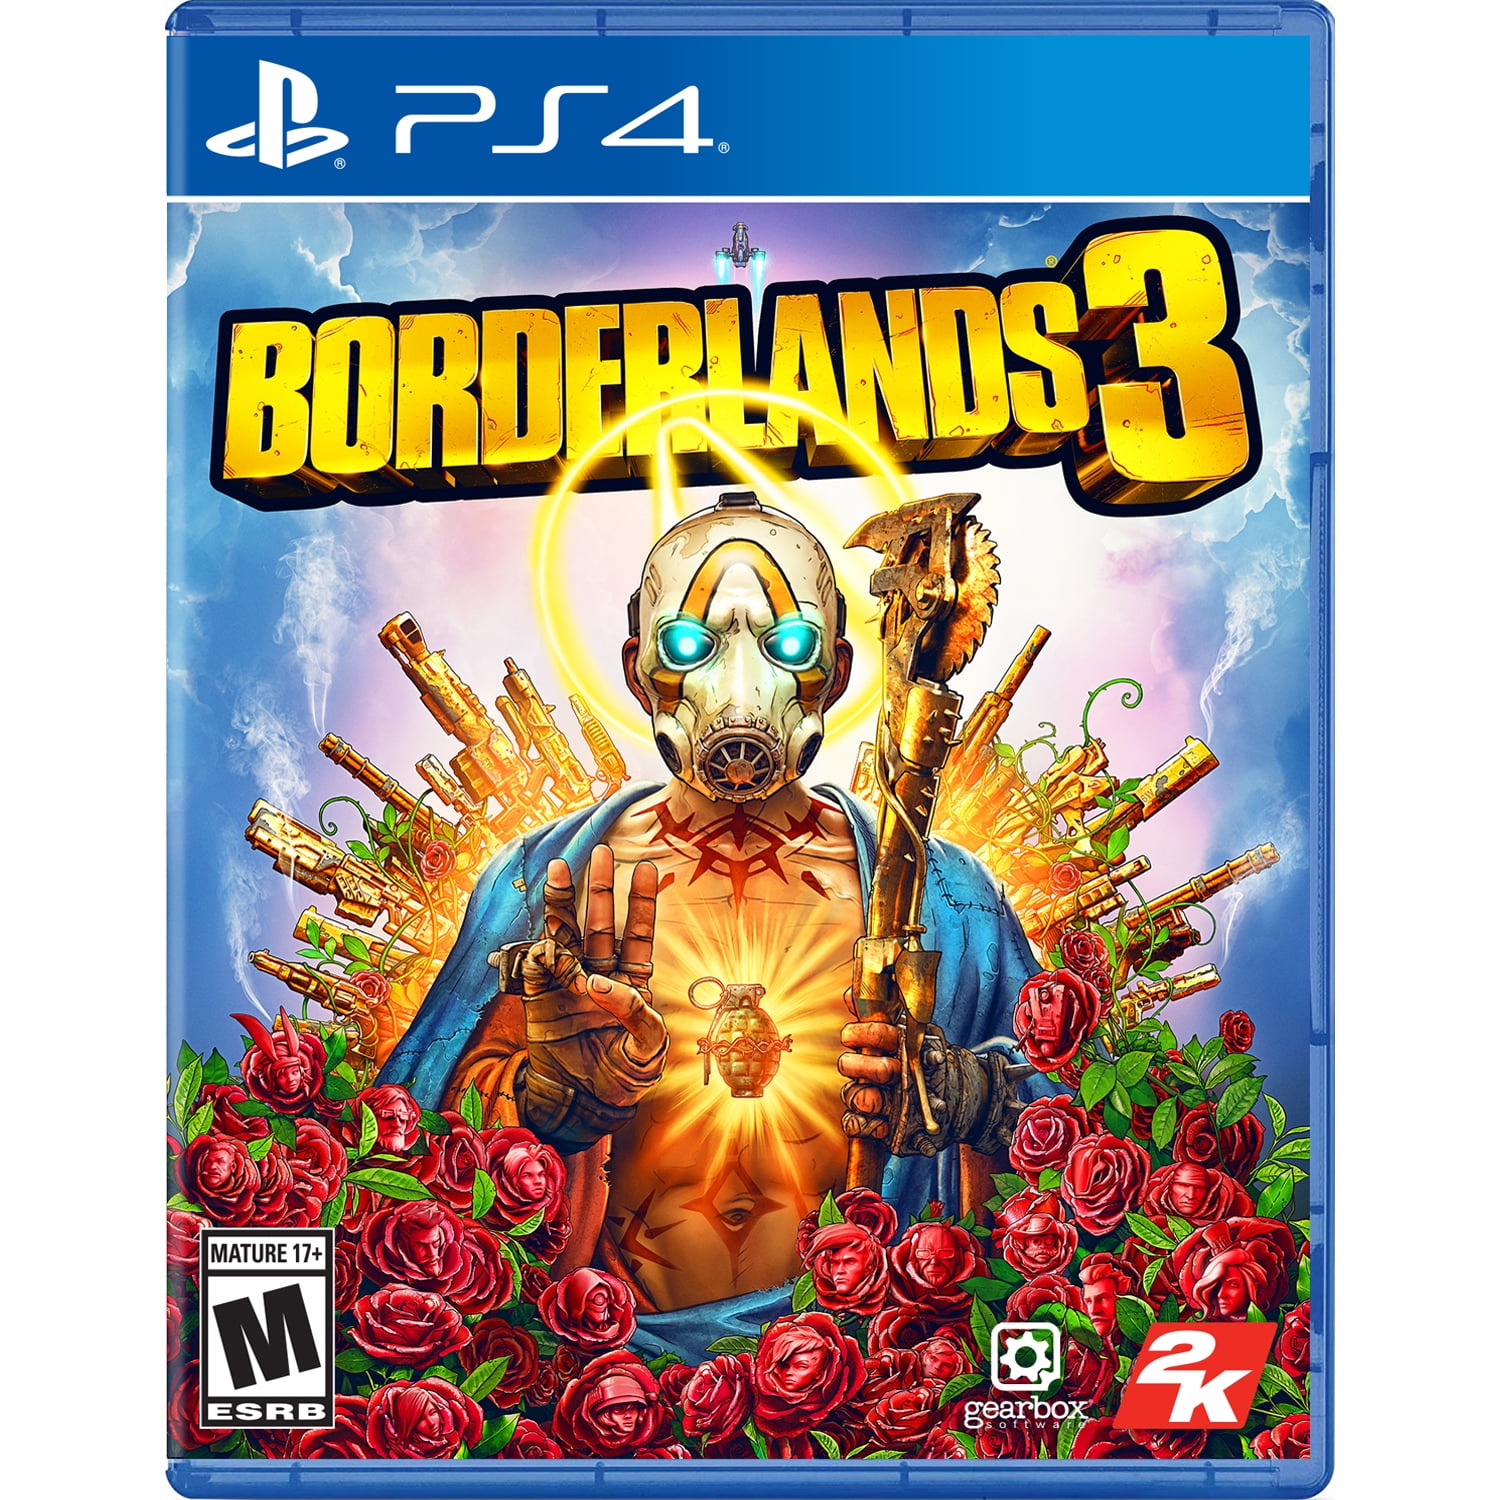 Borderlands 3 Take 2 Playstation 4 0710425574931 Walmart Com